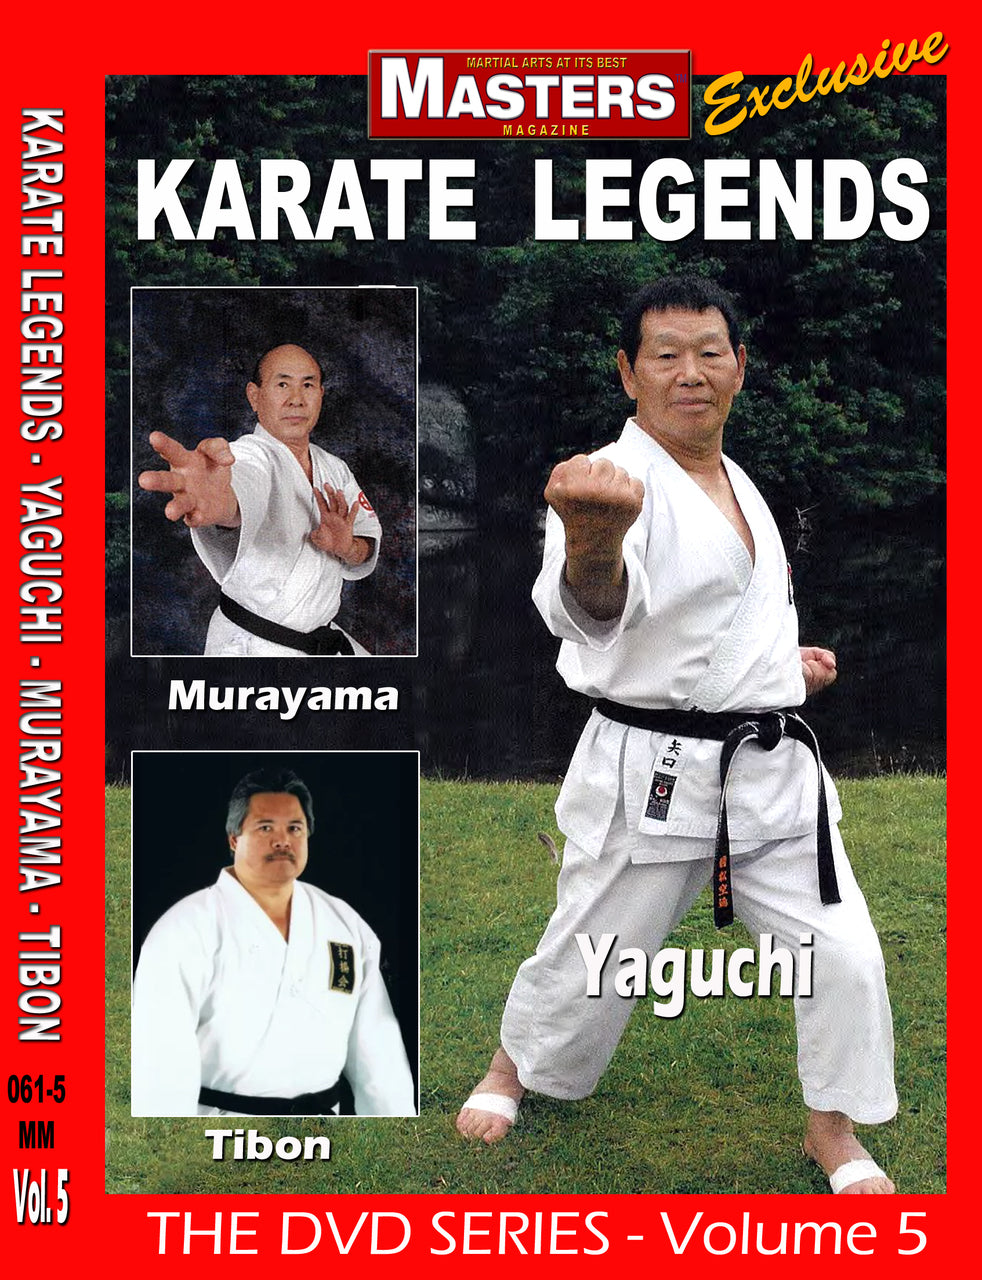 Karate Legends DVD 5 with Yaguchi, Murayama & Tibon - Budovideos Inc